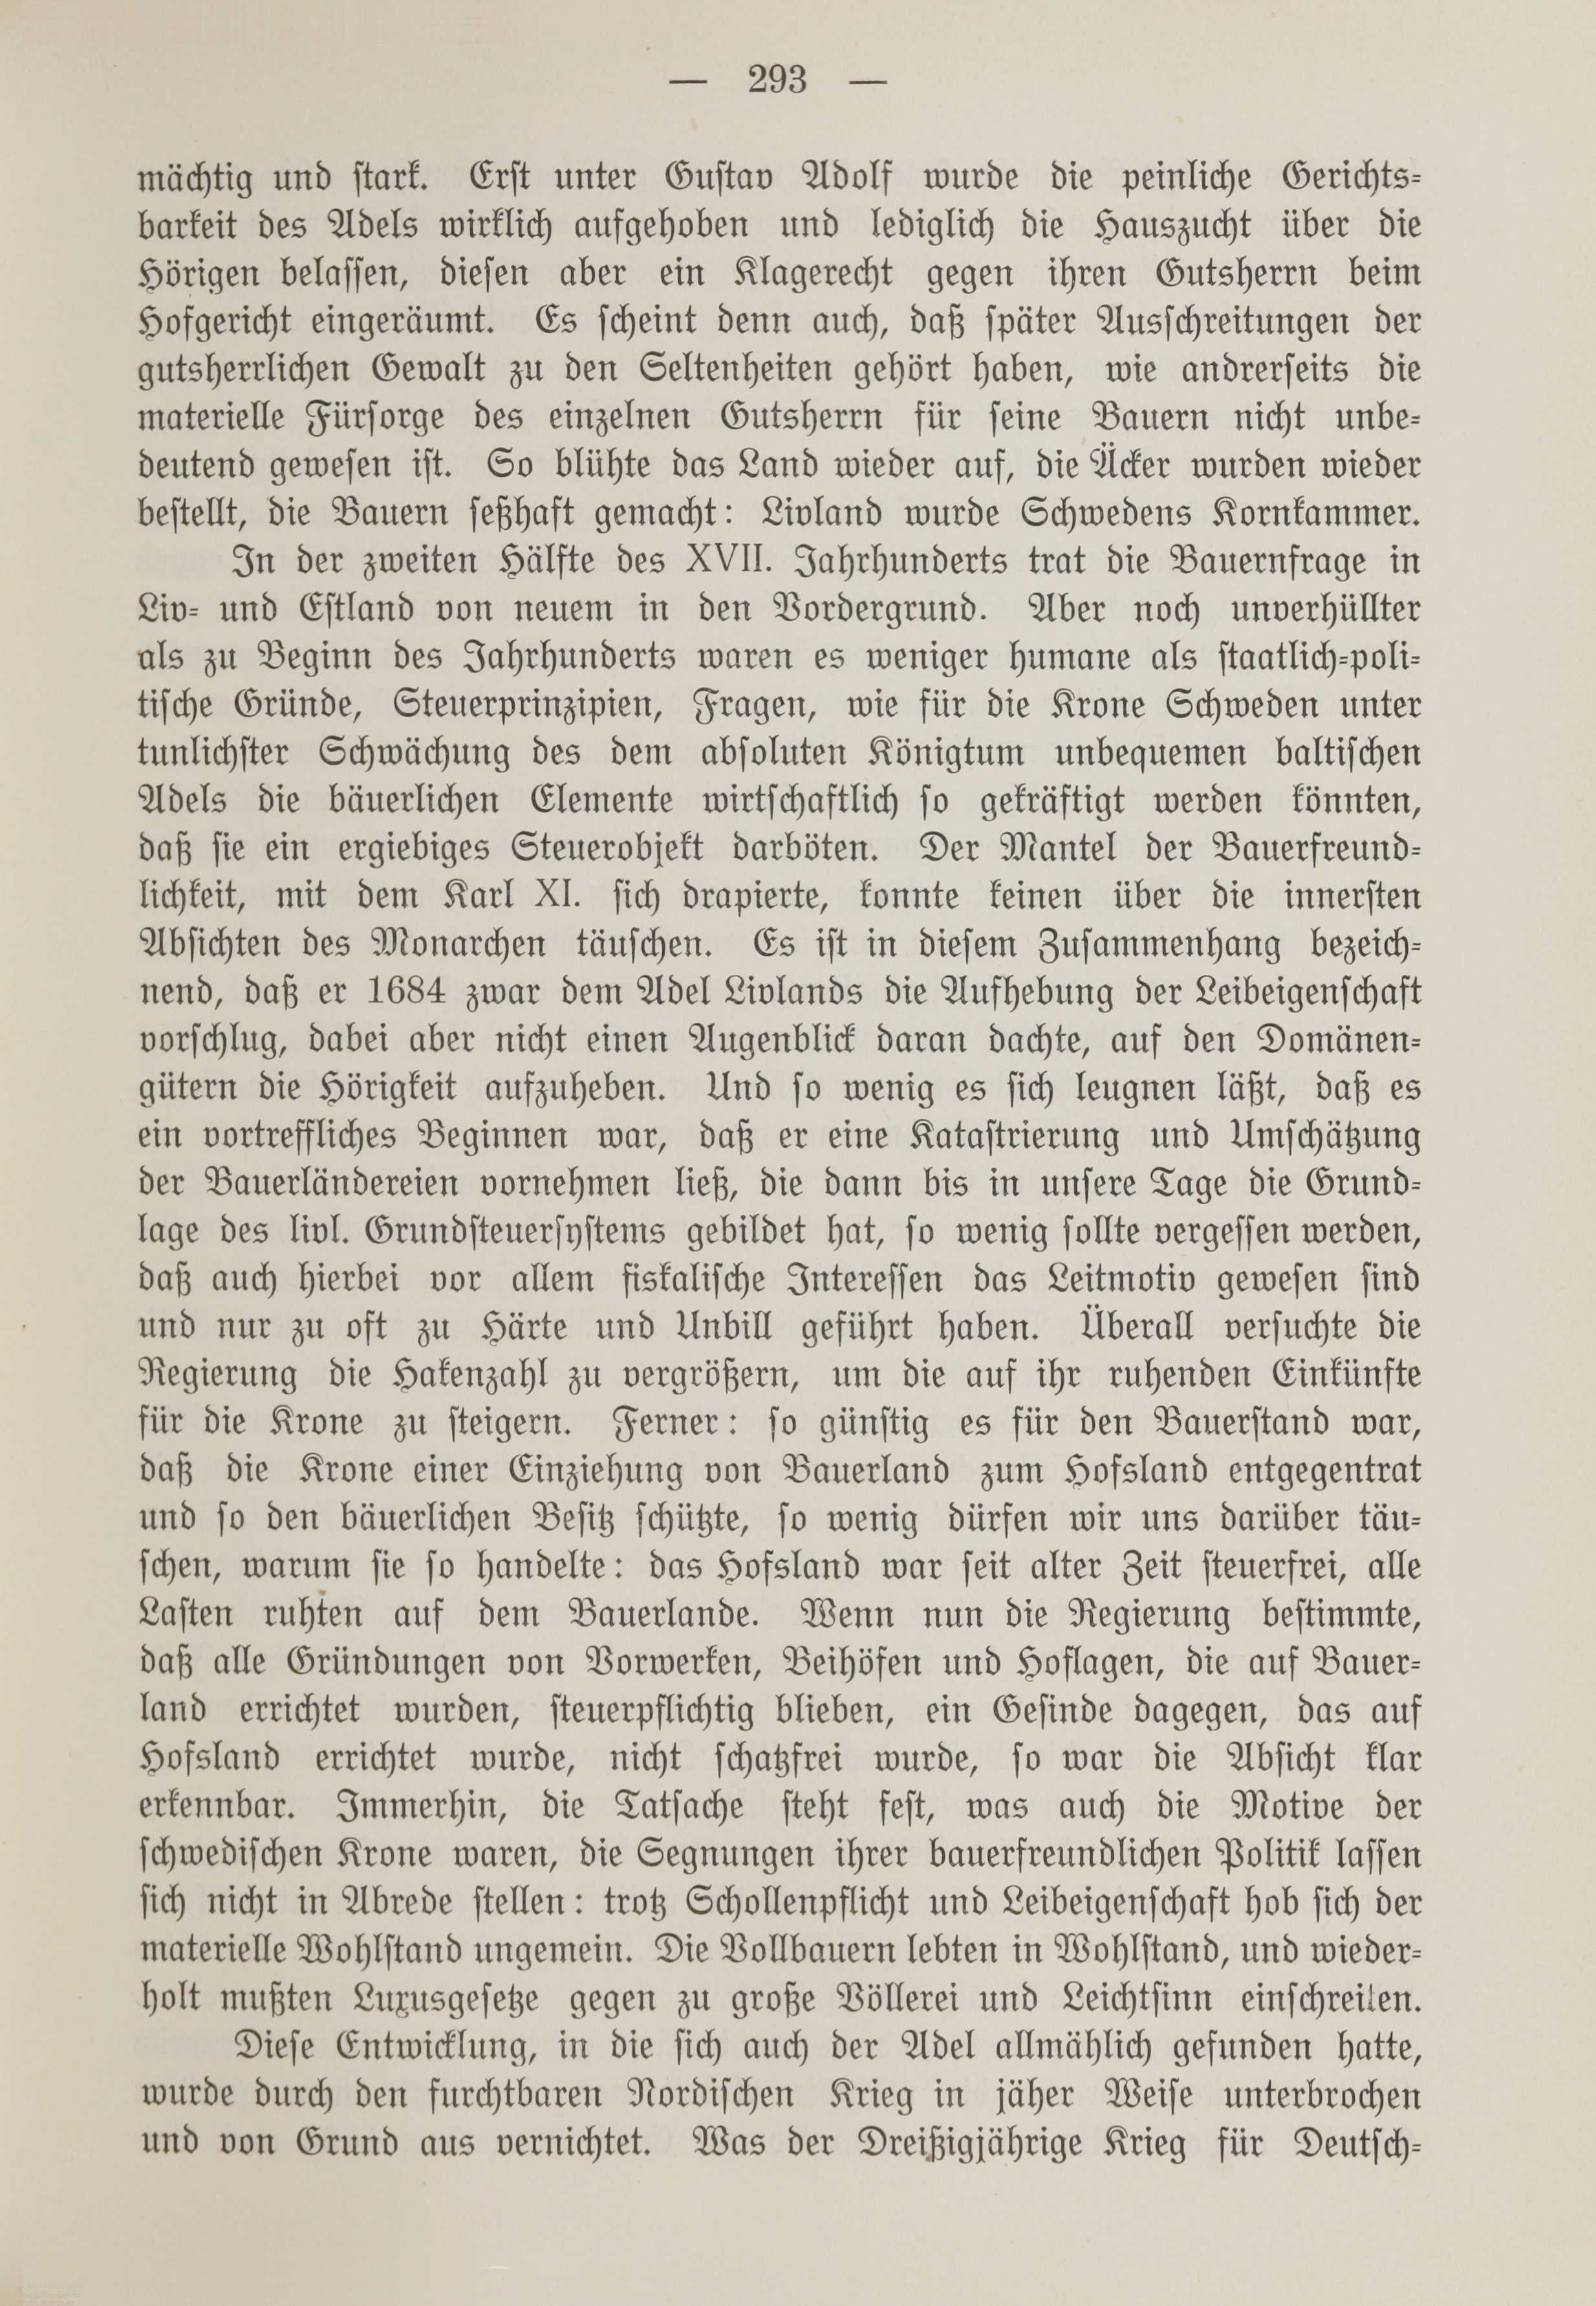 Deutsche Monatsschrift für Russland [1] (1912) | 301. (293) Main body of text